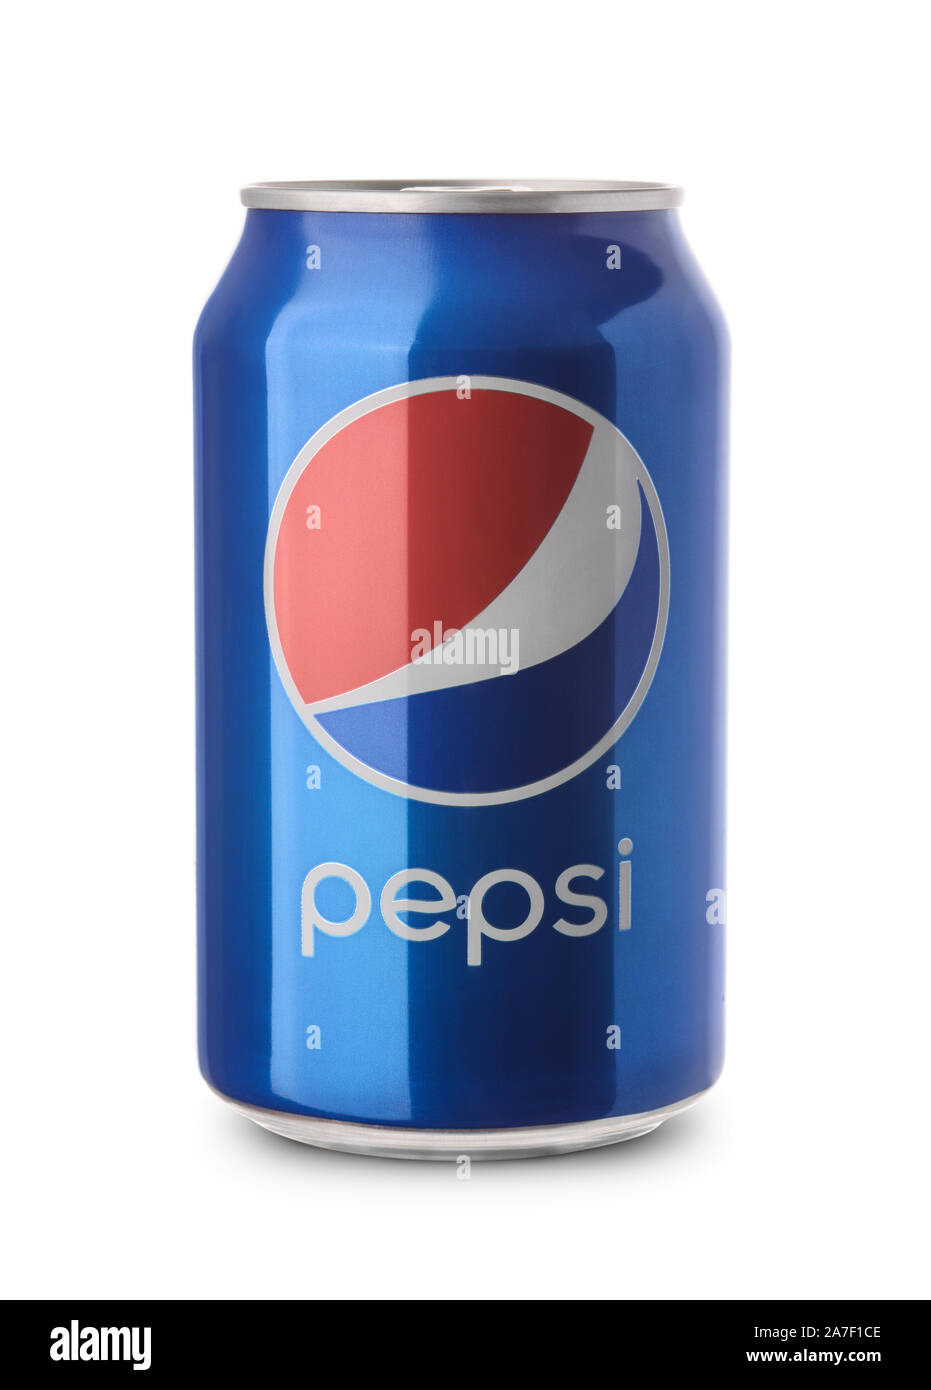 Samara, Russie - Février 26, 2016 : un produit tiré de l'un peut non ouvert de Pepsi isolé sur fond blanc. Pepsi est fabriqué par Pepsico Inc. Banque D'Images